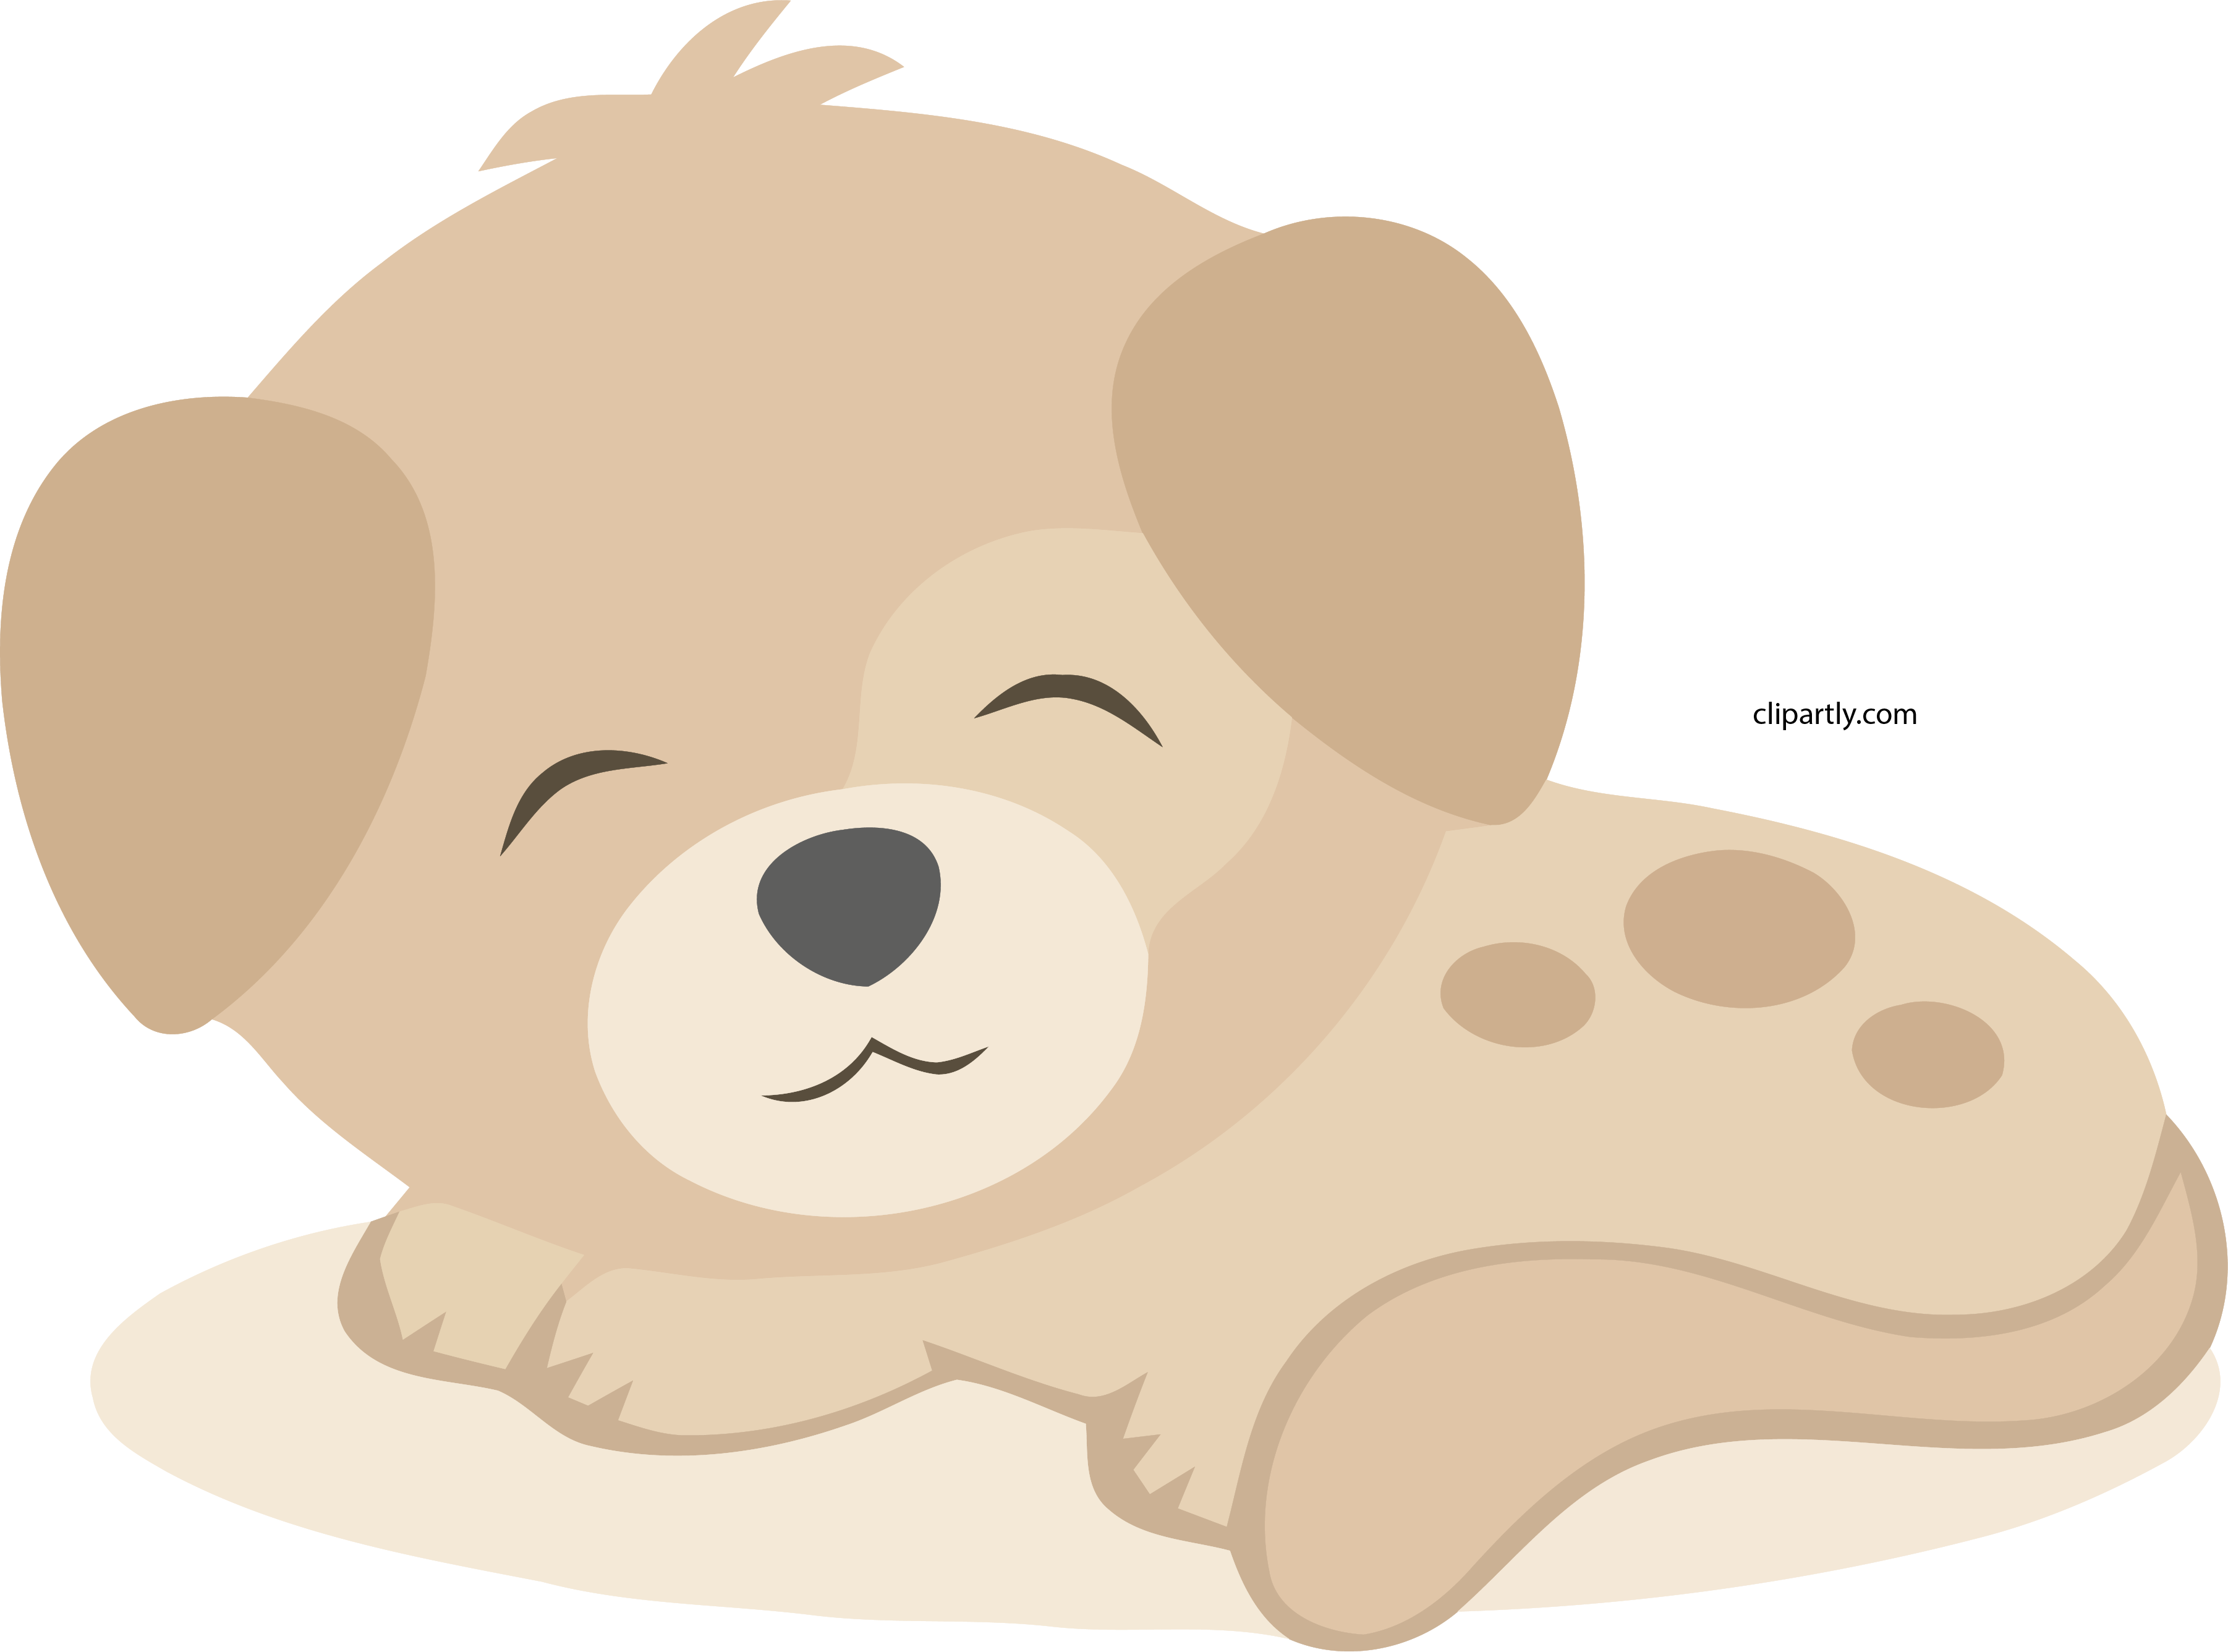 Peachpuff Cute Small Dog Clipart Png Cartoon - Clip Art Library